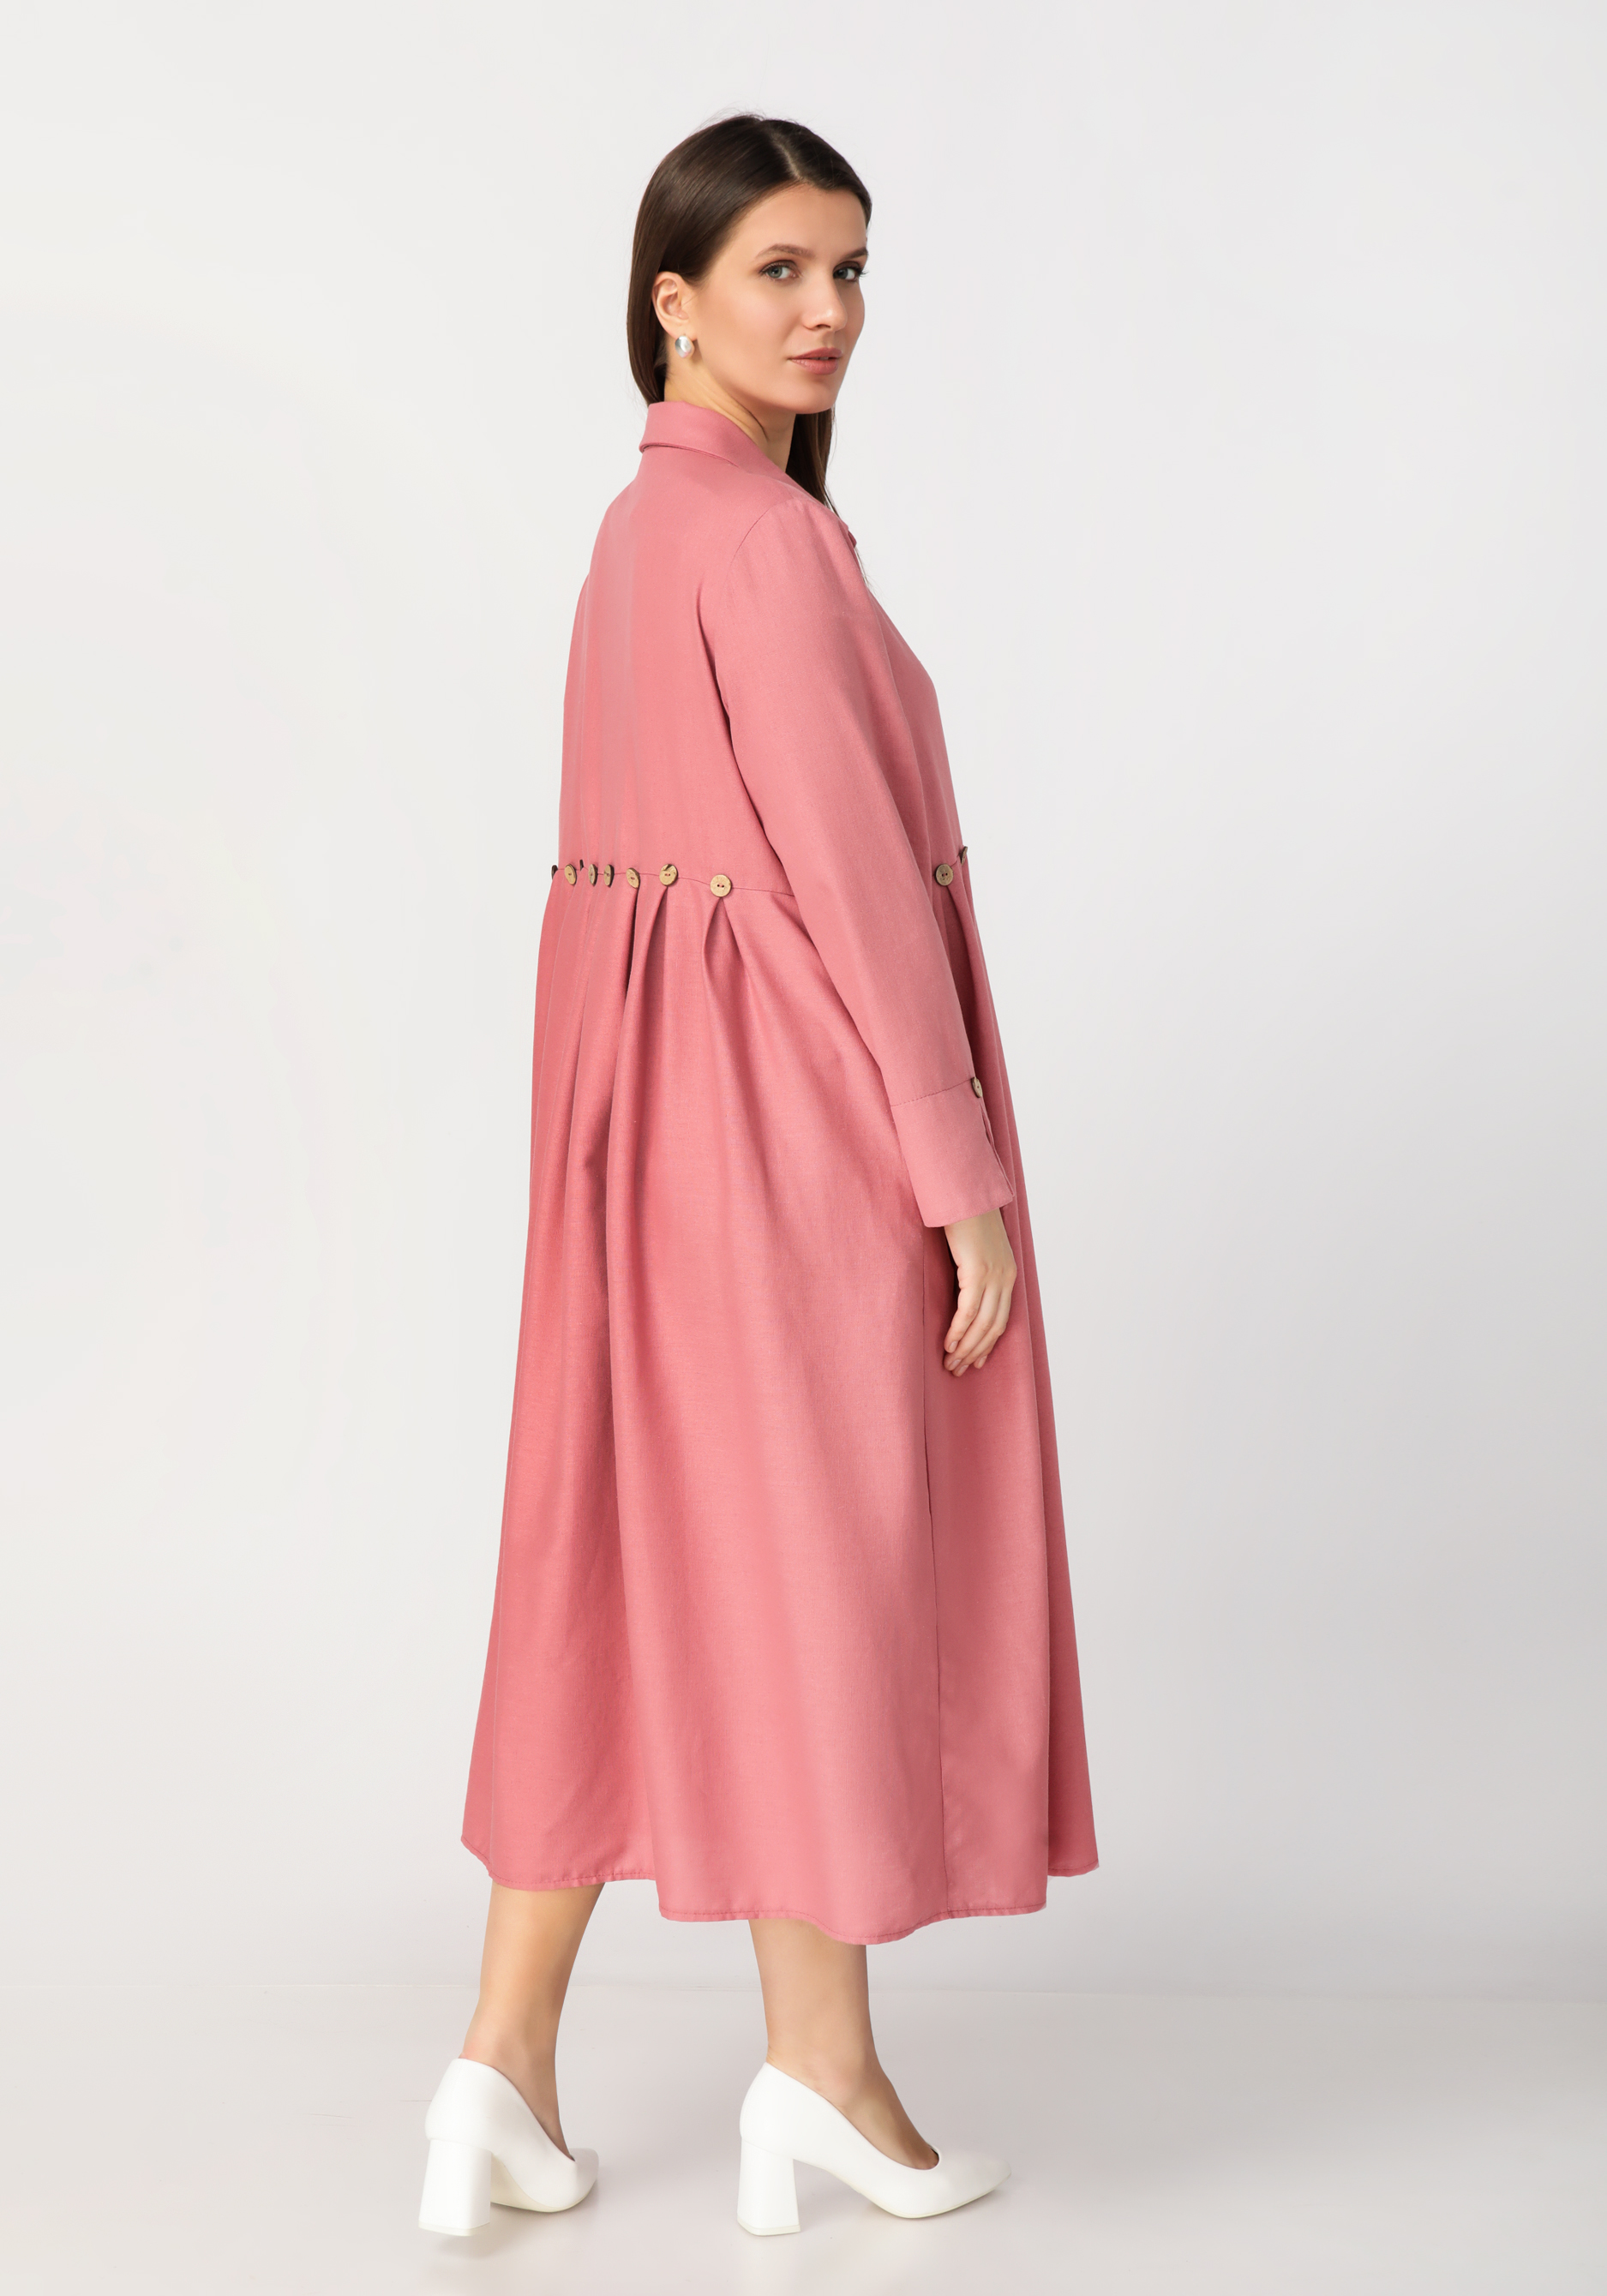 Платье-рубашка из льняной ткани Frida, цвет розовый, размер 58-60 - фото 7